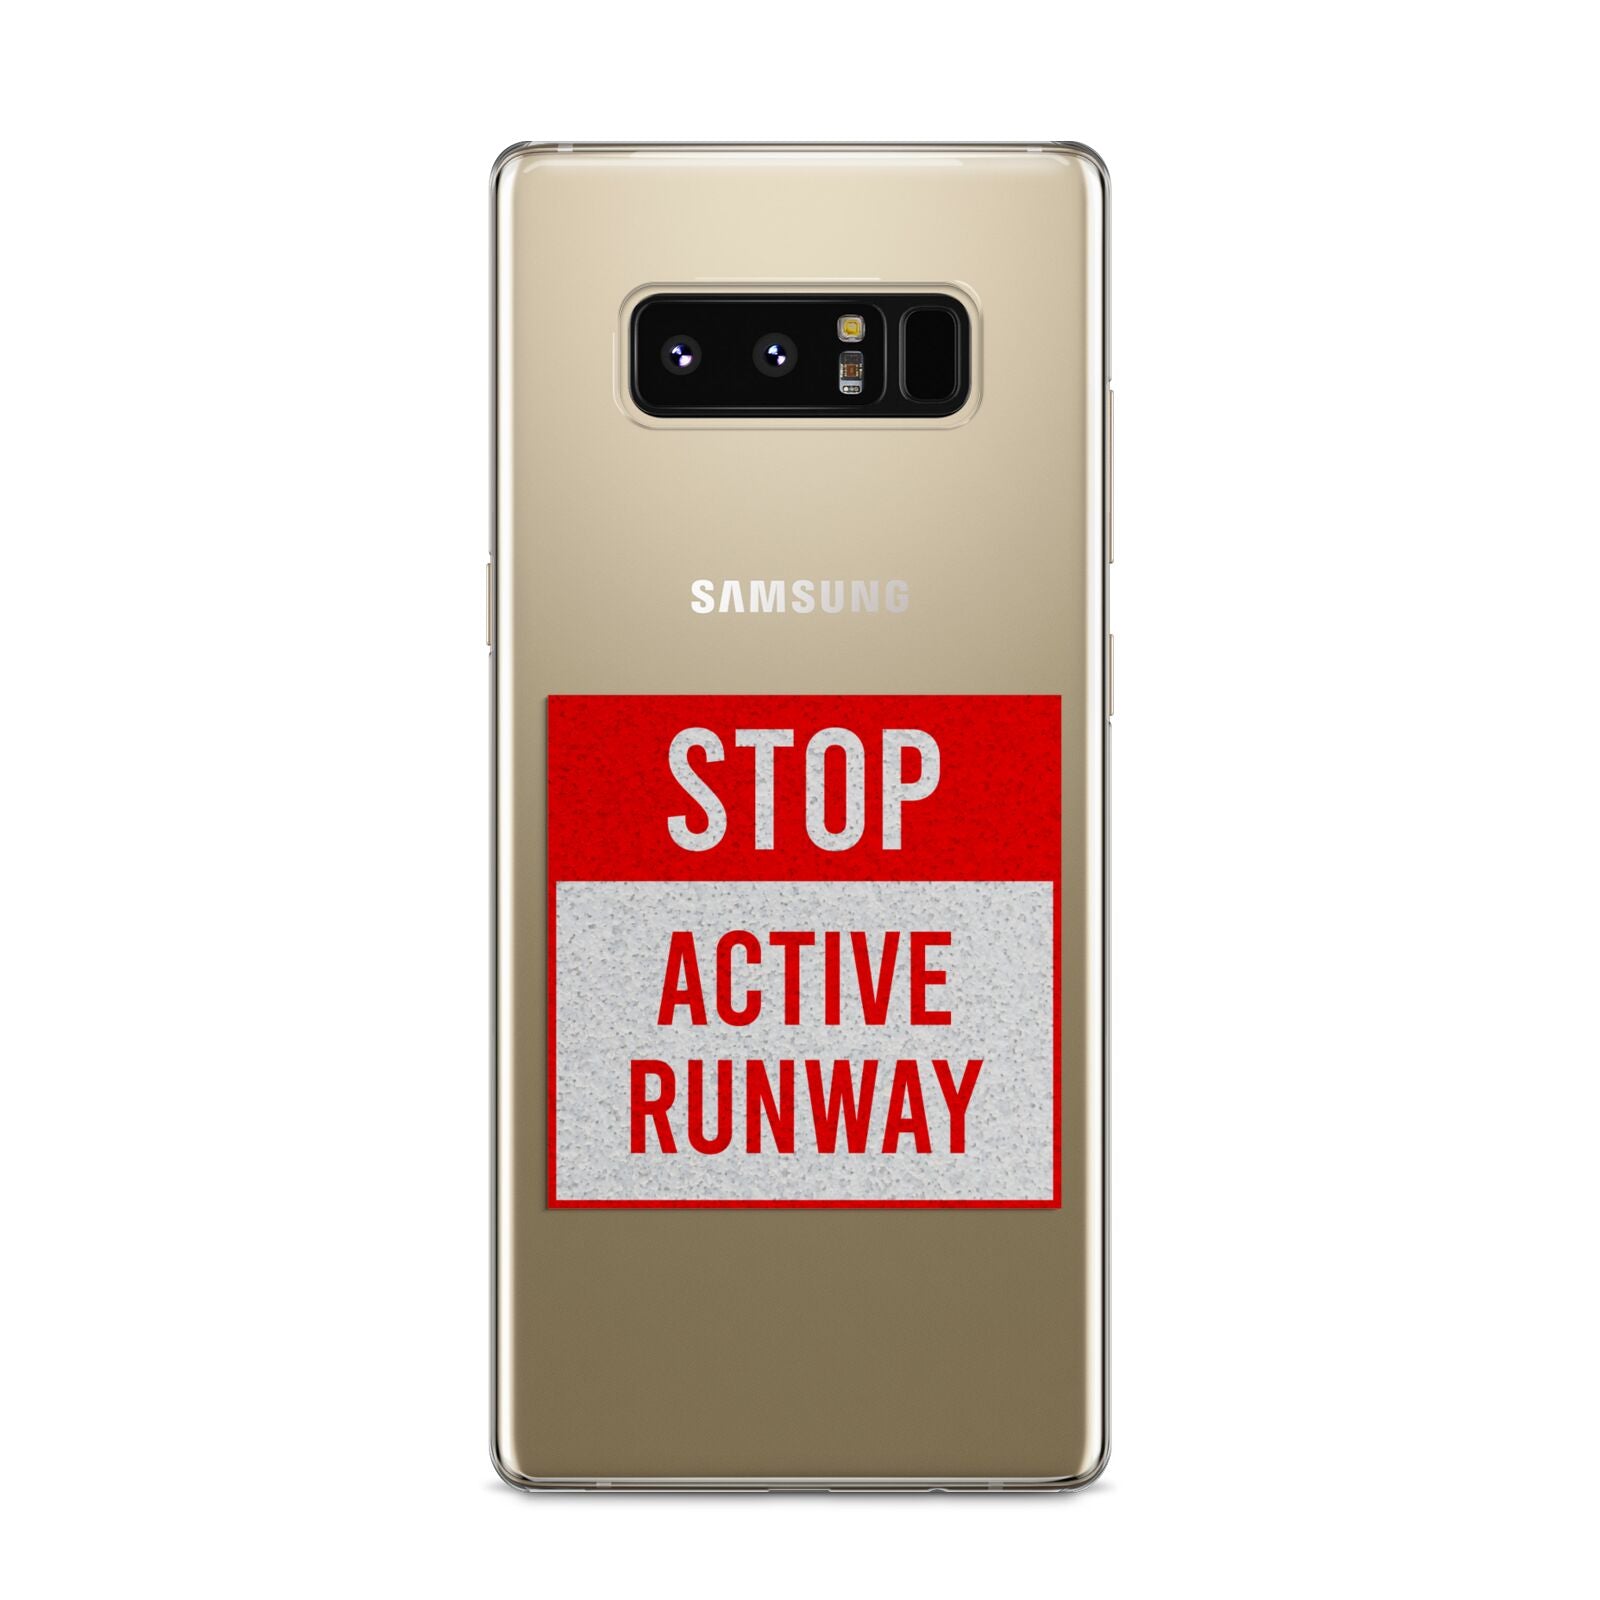 Stop Active Runway Samsung Galaxy S8 Case